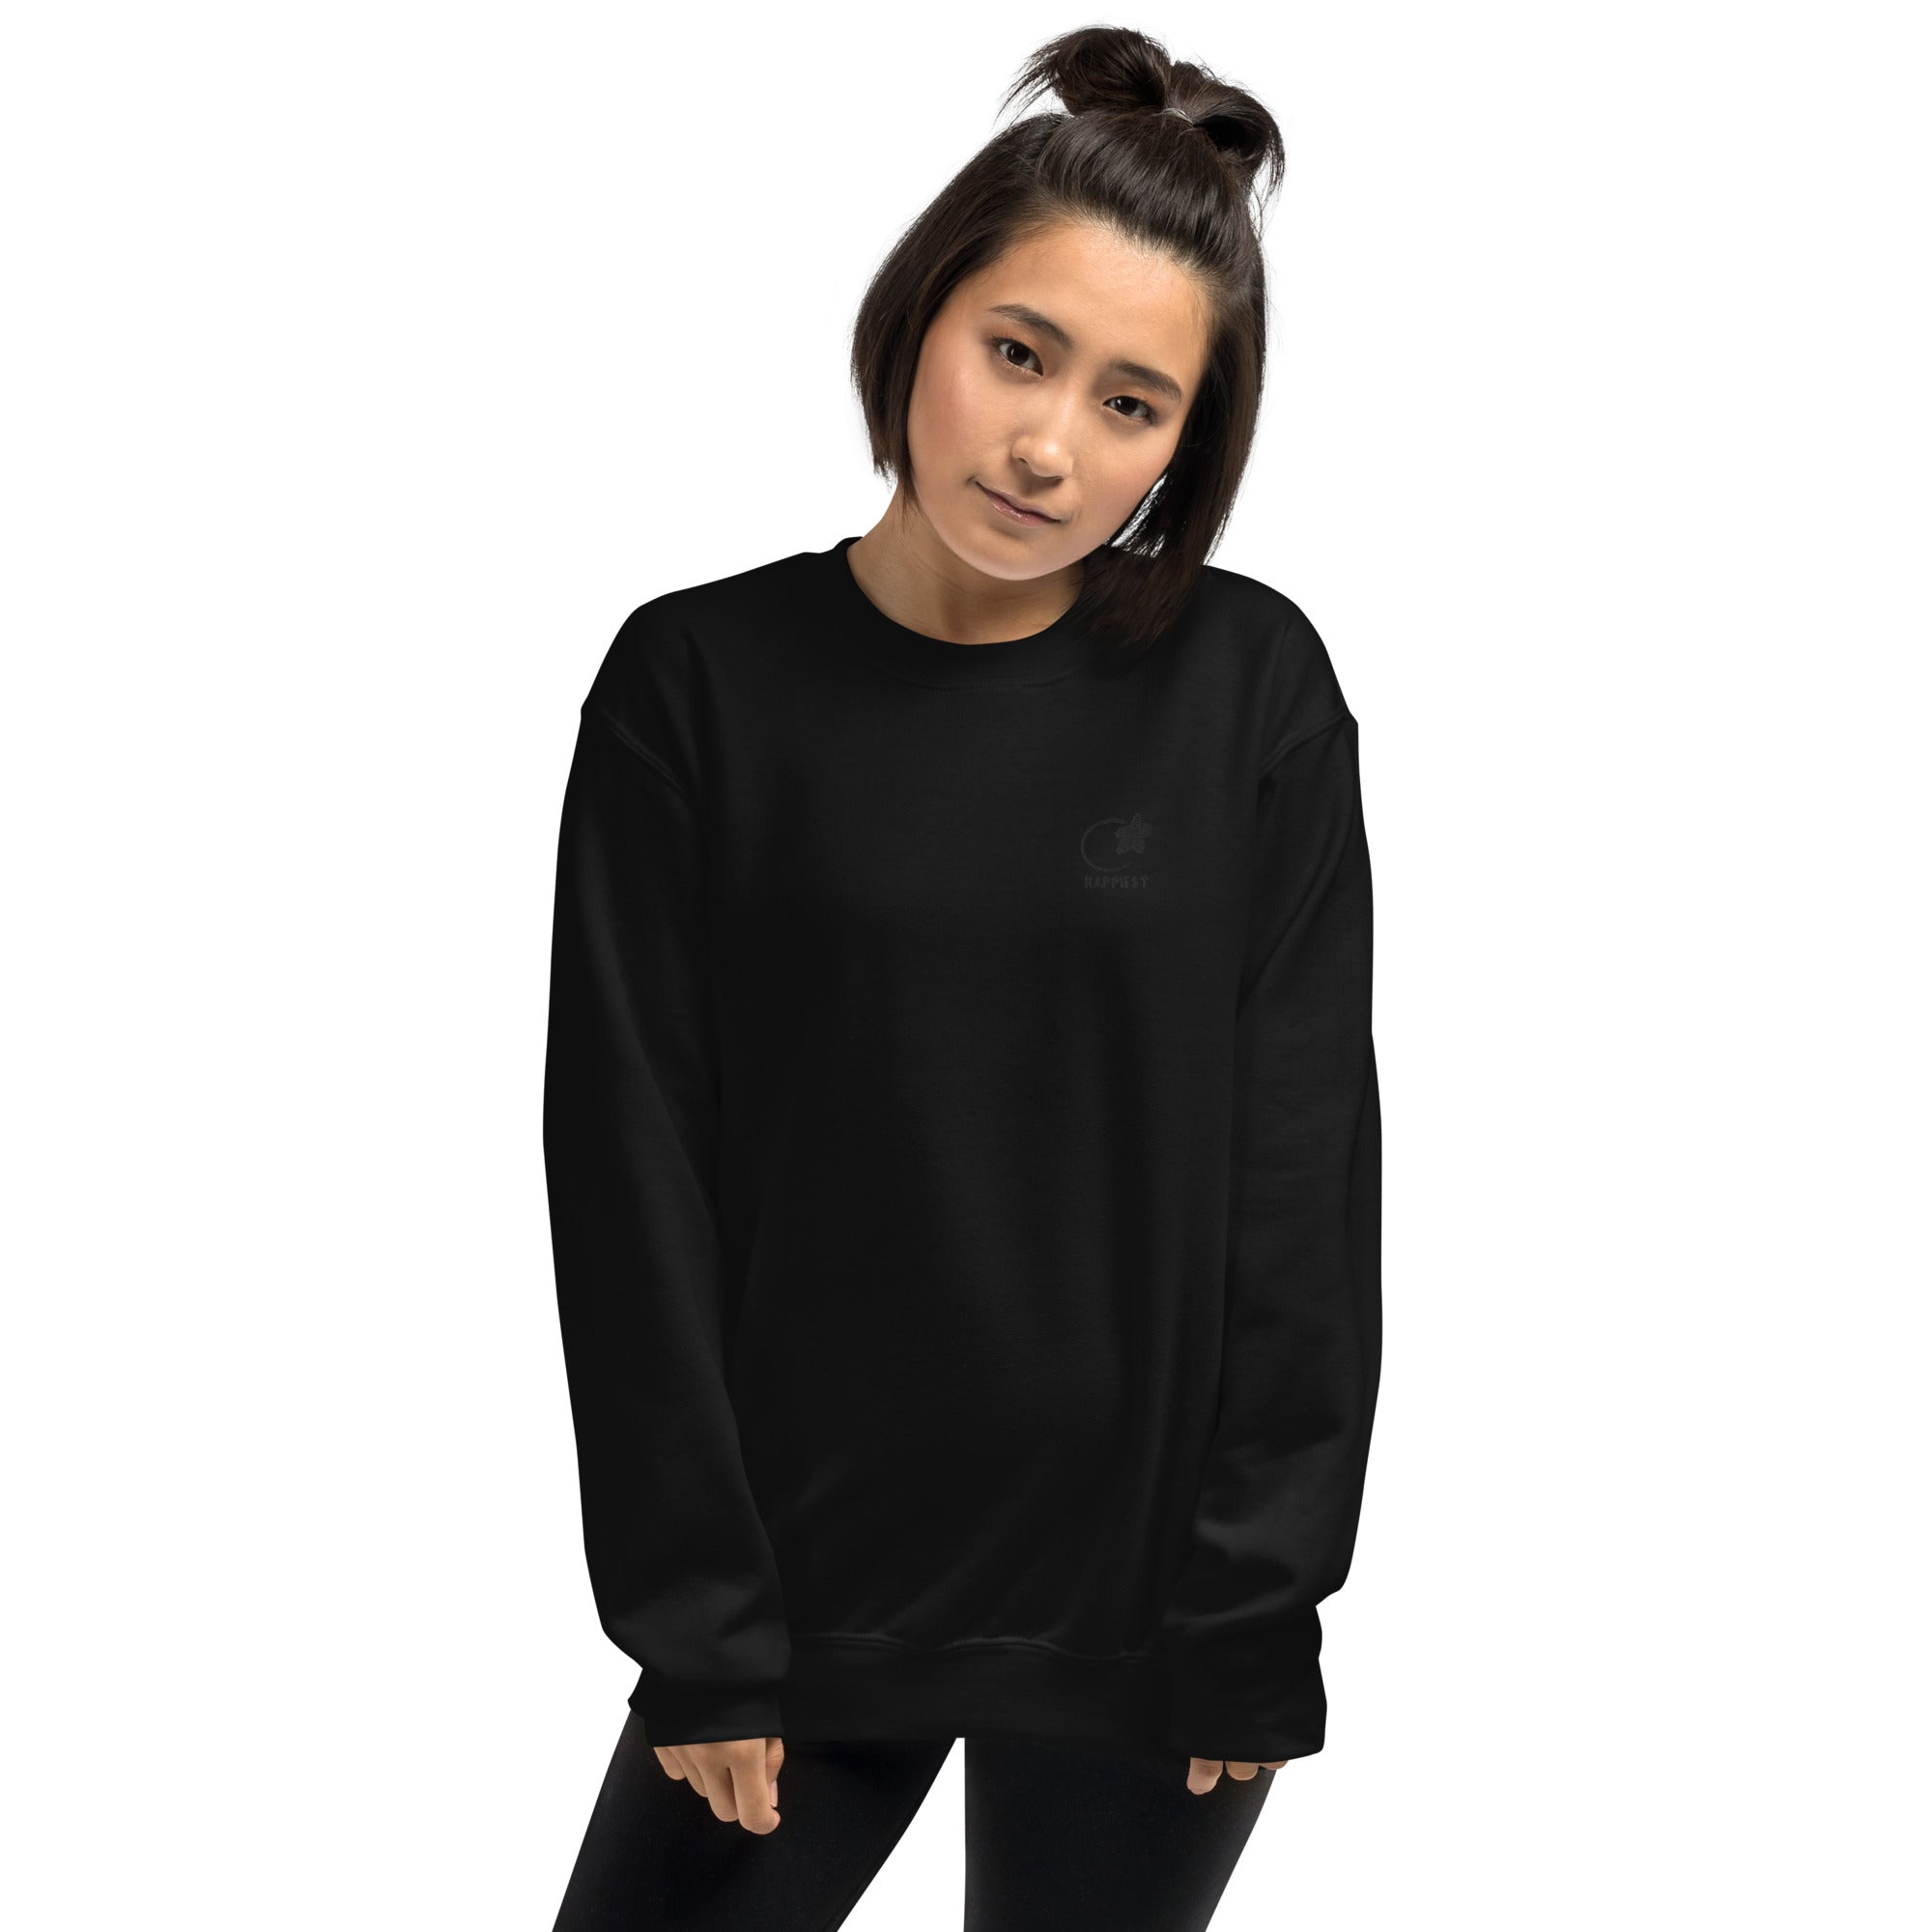 Black on Black Happiest Unisex Sweatshirt